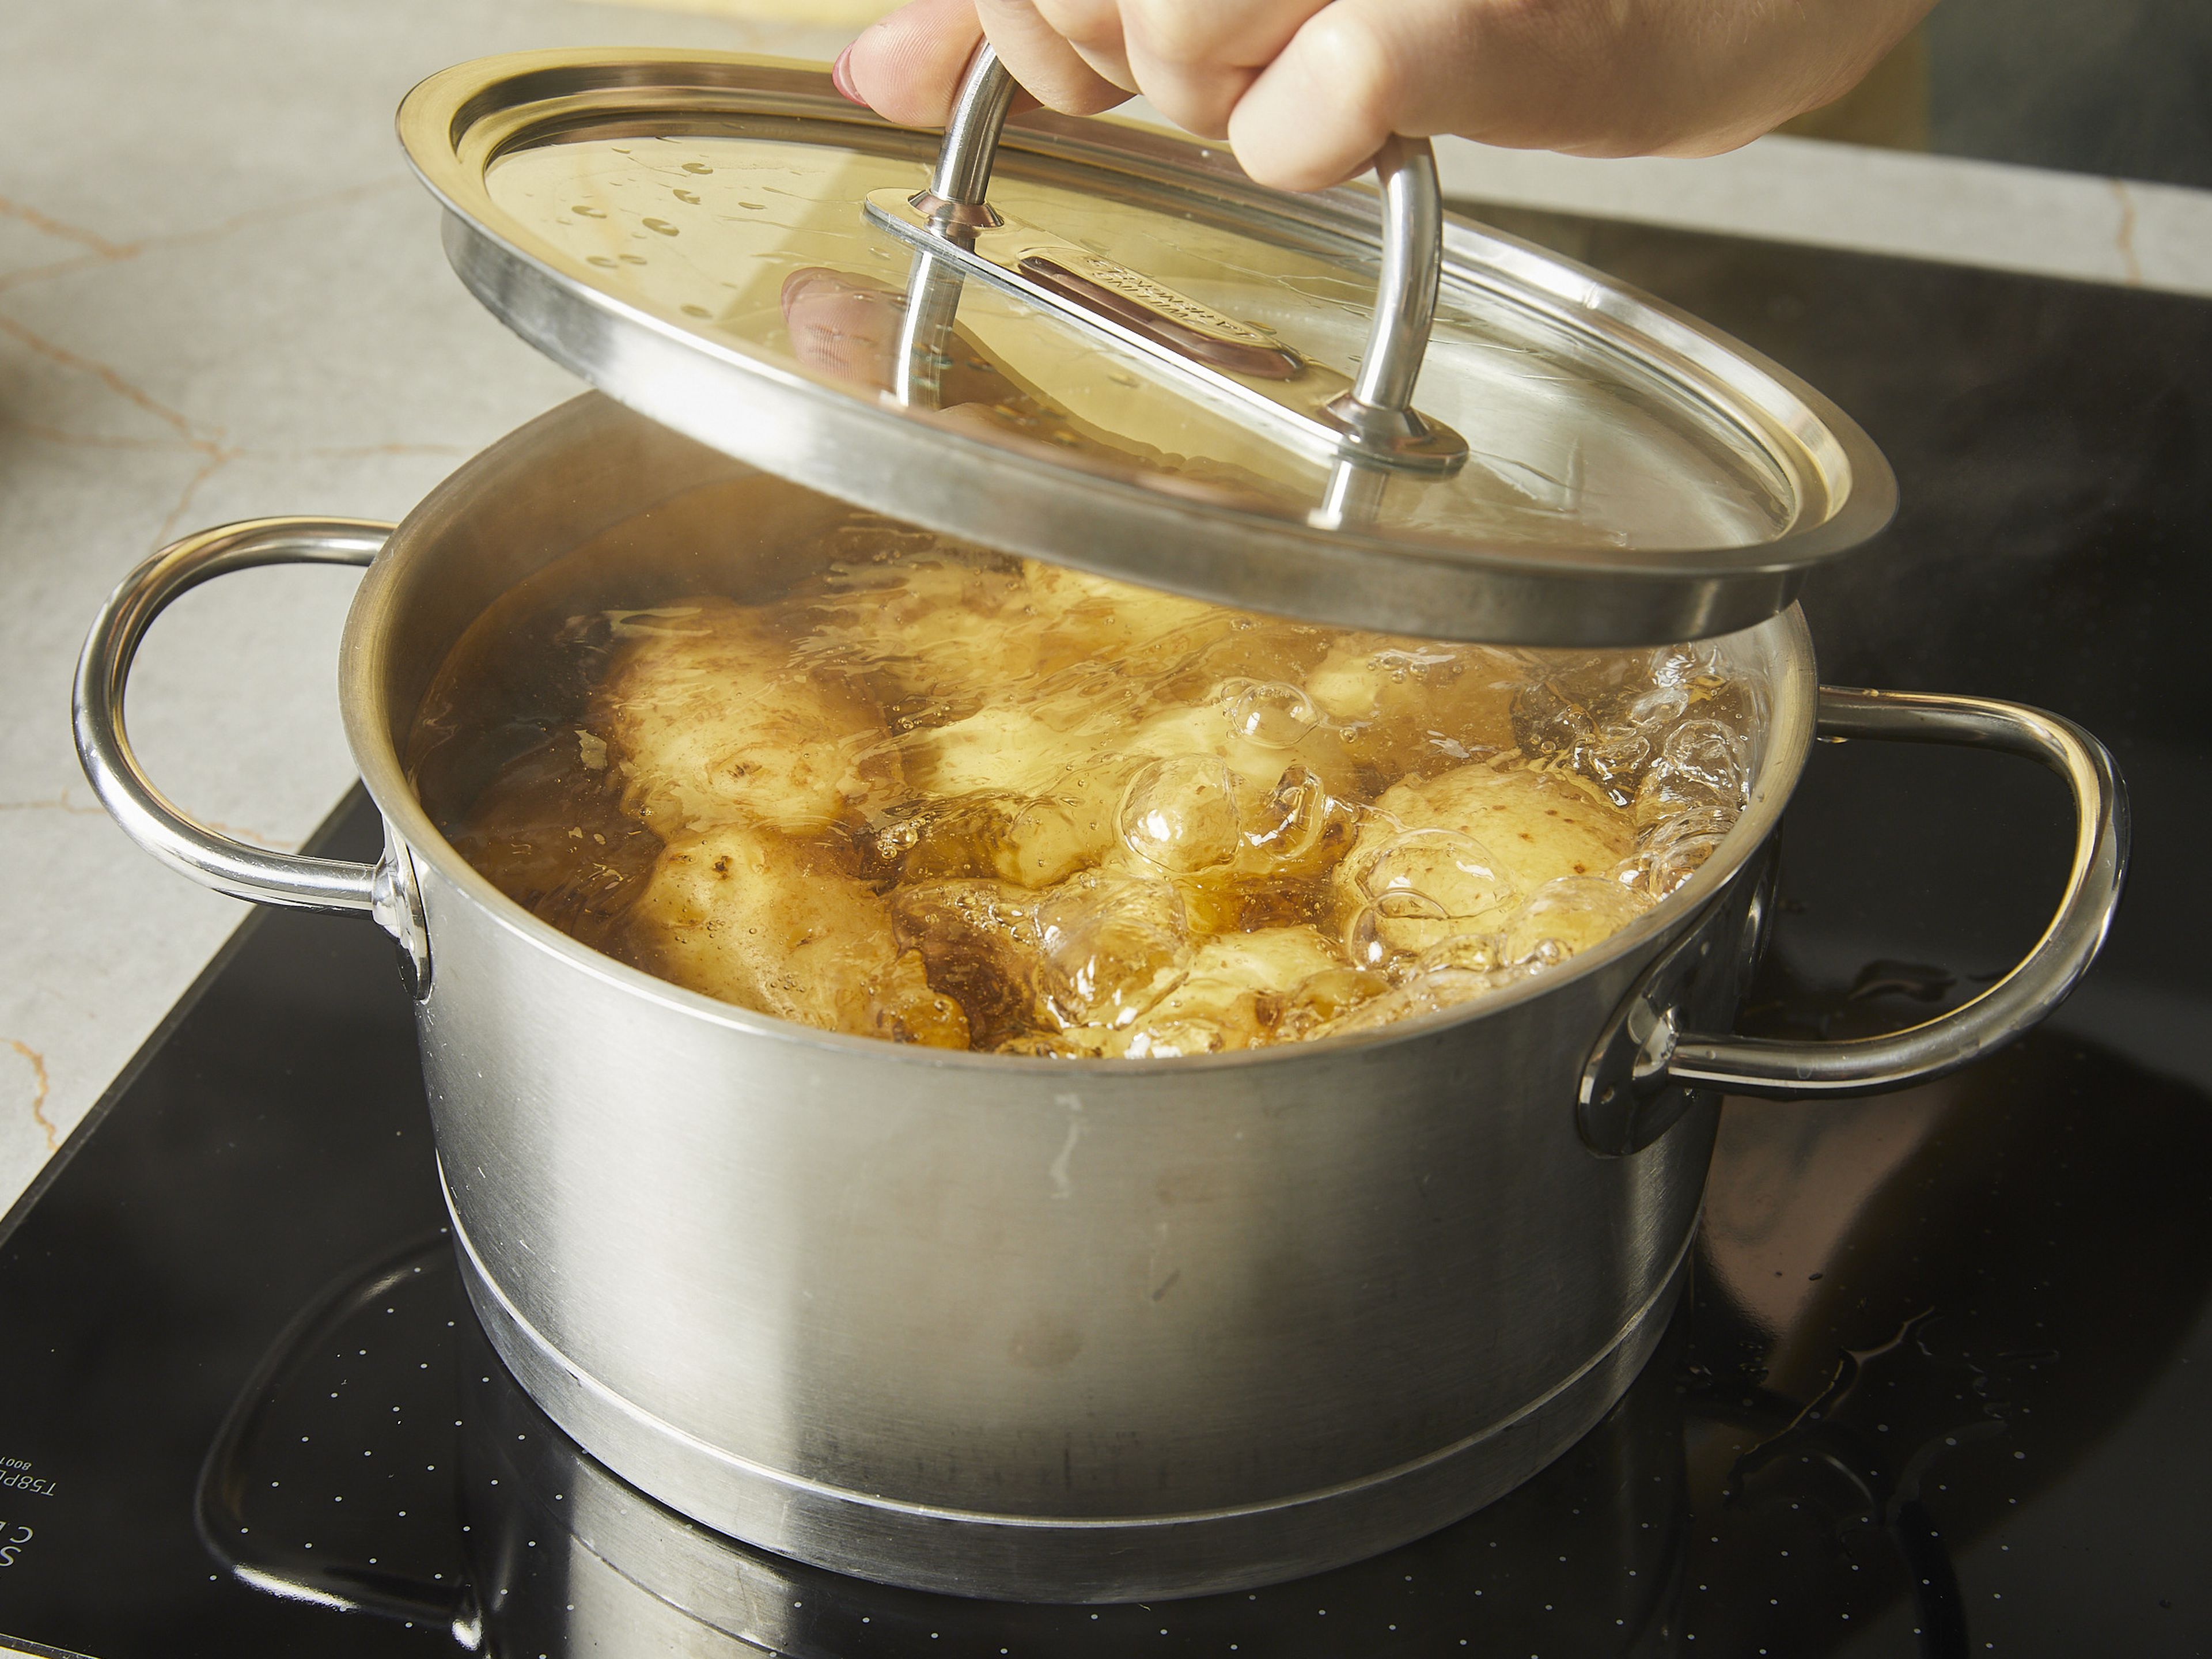 Den Backofen auf 220°C Ober-/Unterhitze (200°C Umluft) vorheizen. Ganze Kartoffeln mit Schale in einen großen Topf geben und mit kaltem Wasser bedecken. Zum Kochen bringen und ca. 30 Min. kochen oder bis die Schale leicht aufplatzt und die Kartoffeln weich genug sind, um sie mit einem Messer einstechen zu können. Das Wasser abgießen und Kartoffeln auf ein Abkühlgitter legen und mindestens ca. 5 Min. ausdampfen lassen. Dann die Kartoffeln in einen großen Bräter oder eine Auflaufform geben (Gusseisen ist ideal, aber Glas oder Metall eignen sich auch. Keramik sollte vermieden werden.).